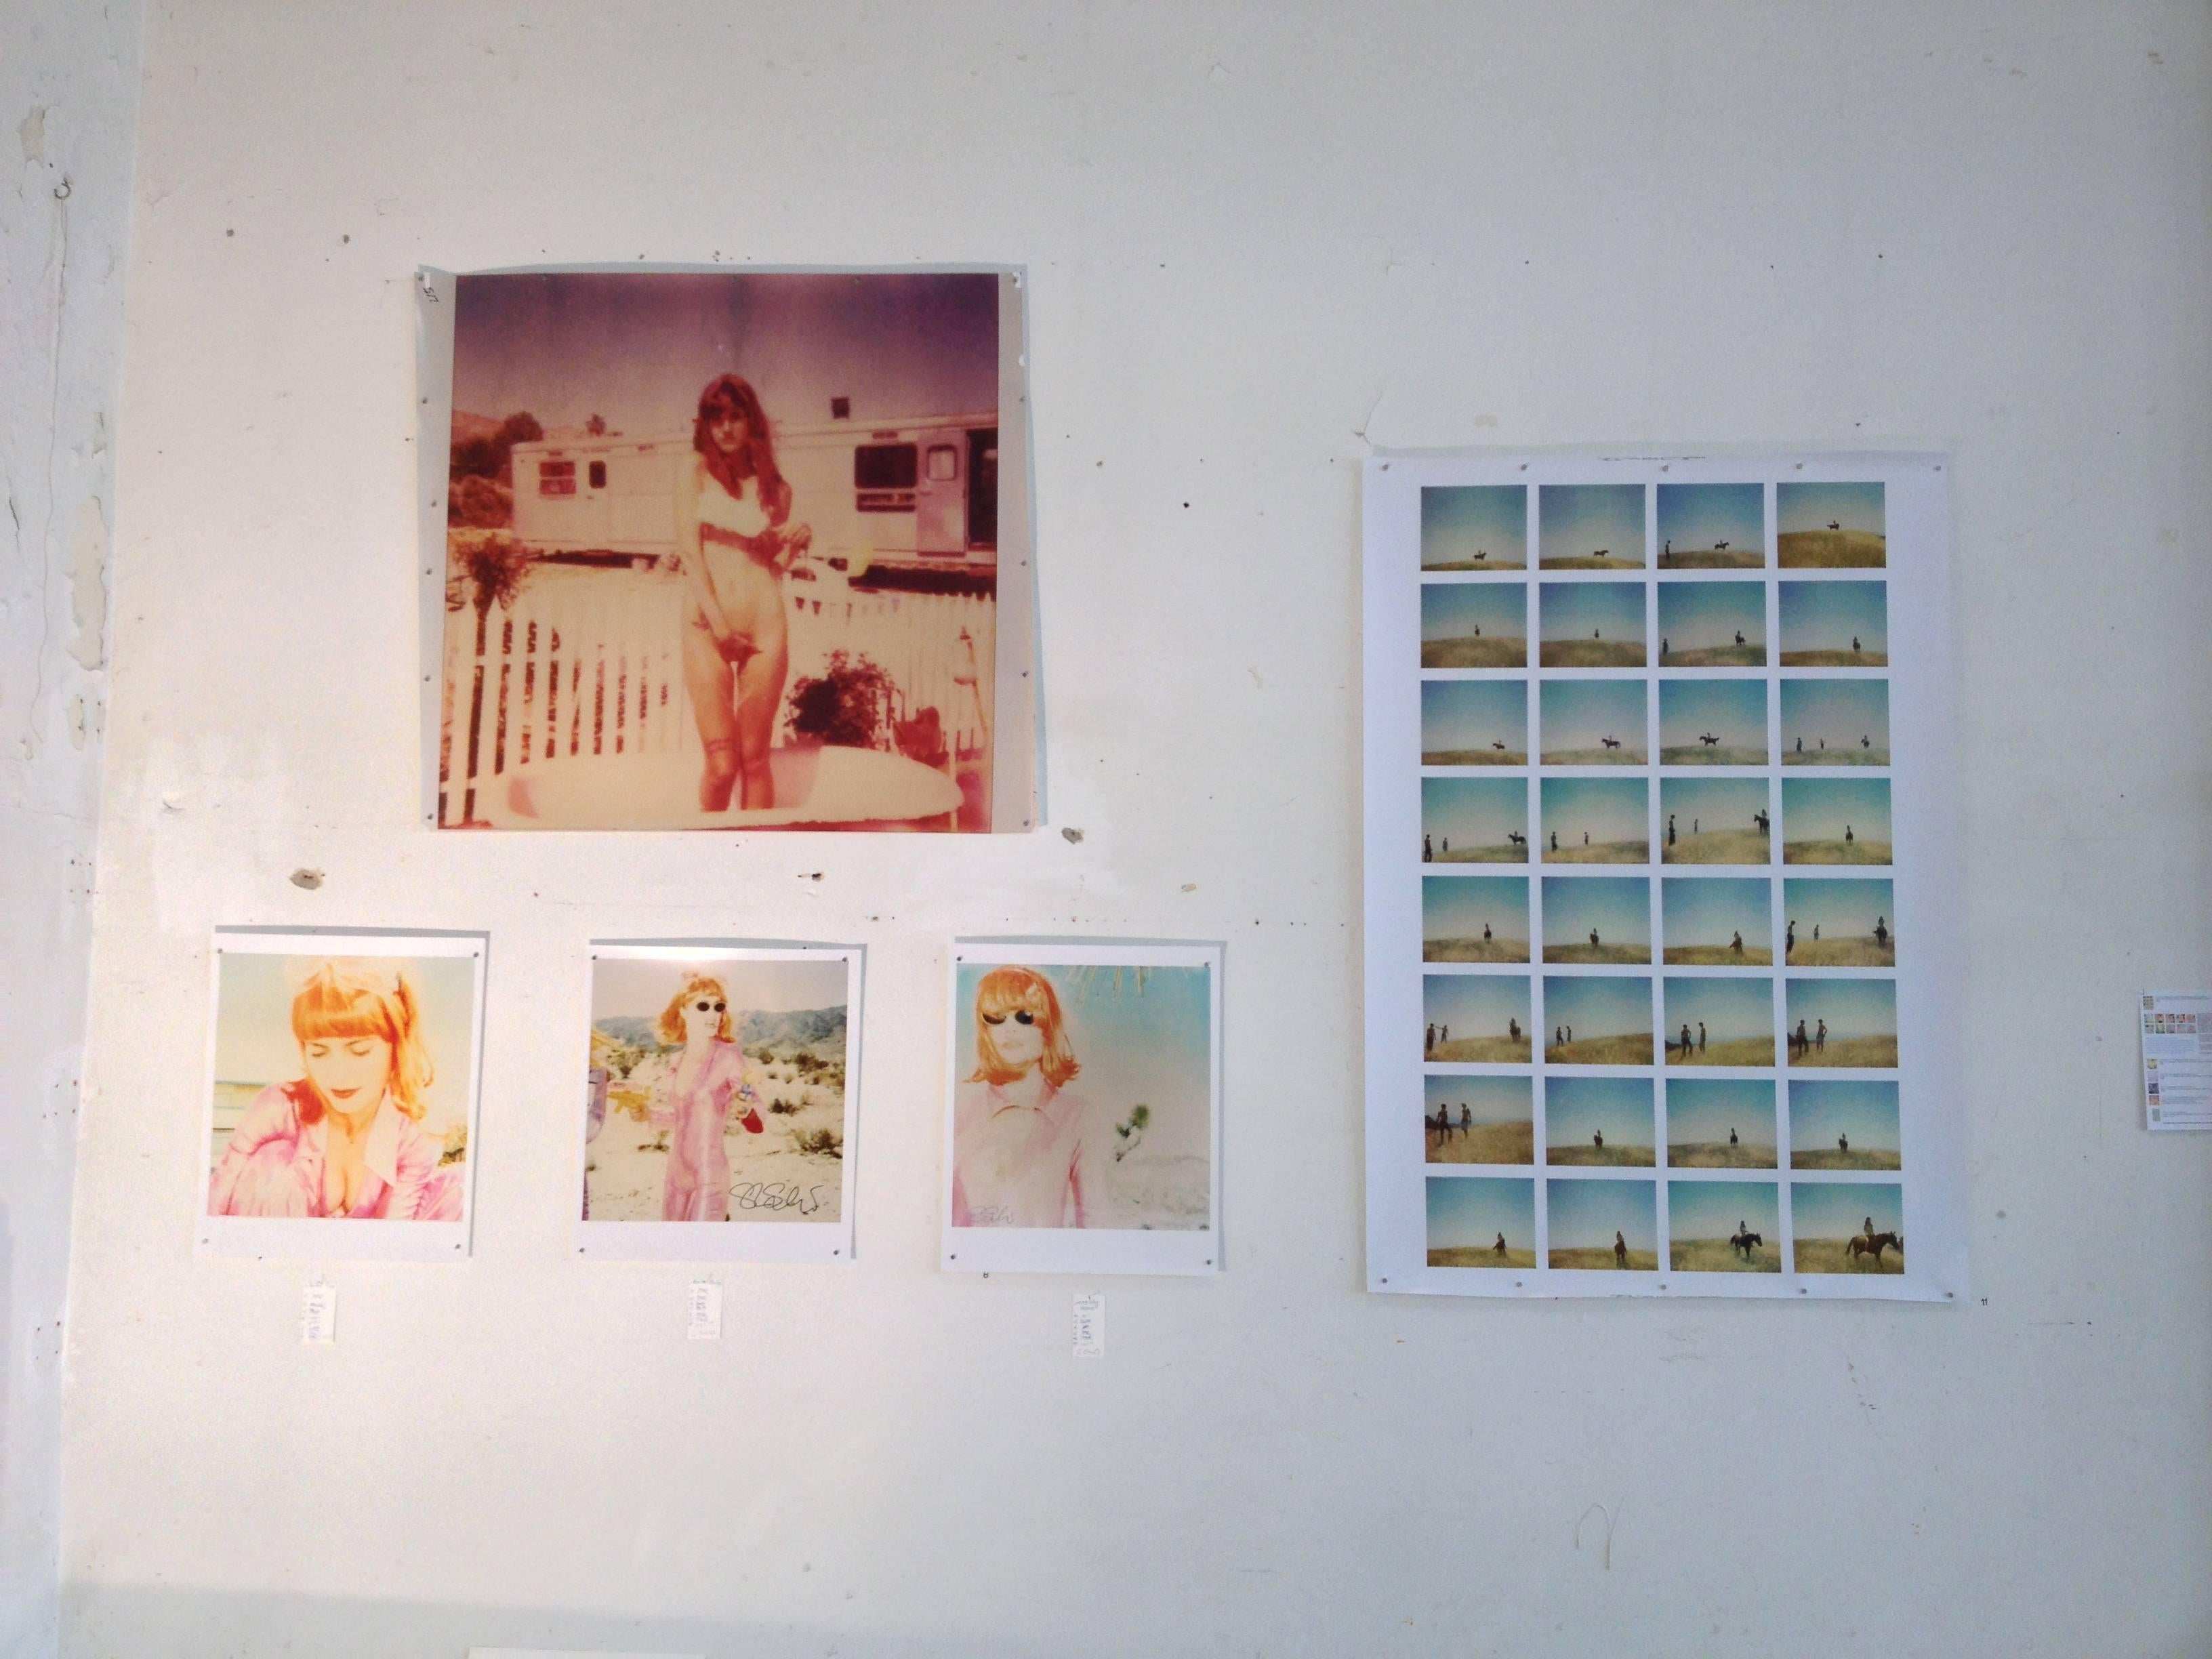 Dream von Jane's Dream - Zeitgenössisch, Porträt, Frauen, Polaroid, 21. Jahrhundert, Farbe  3